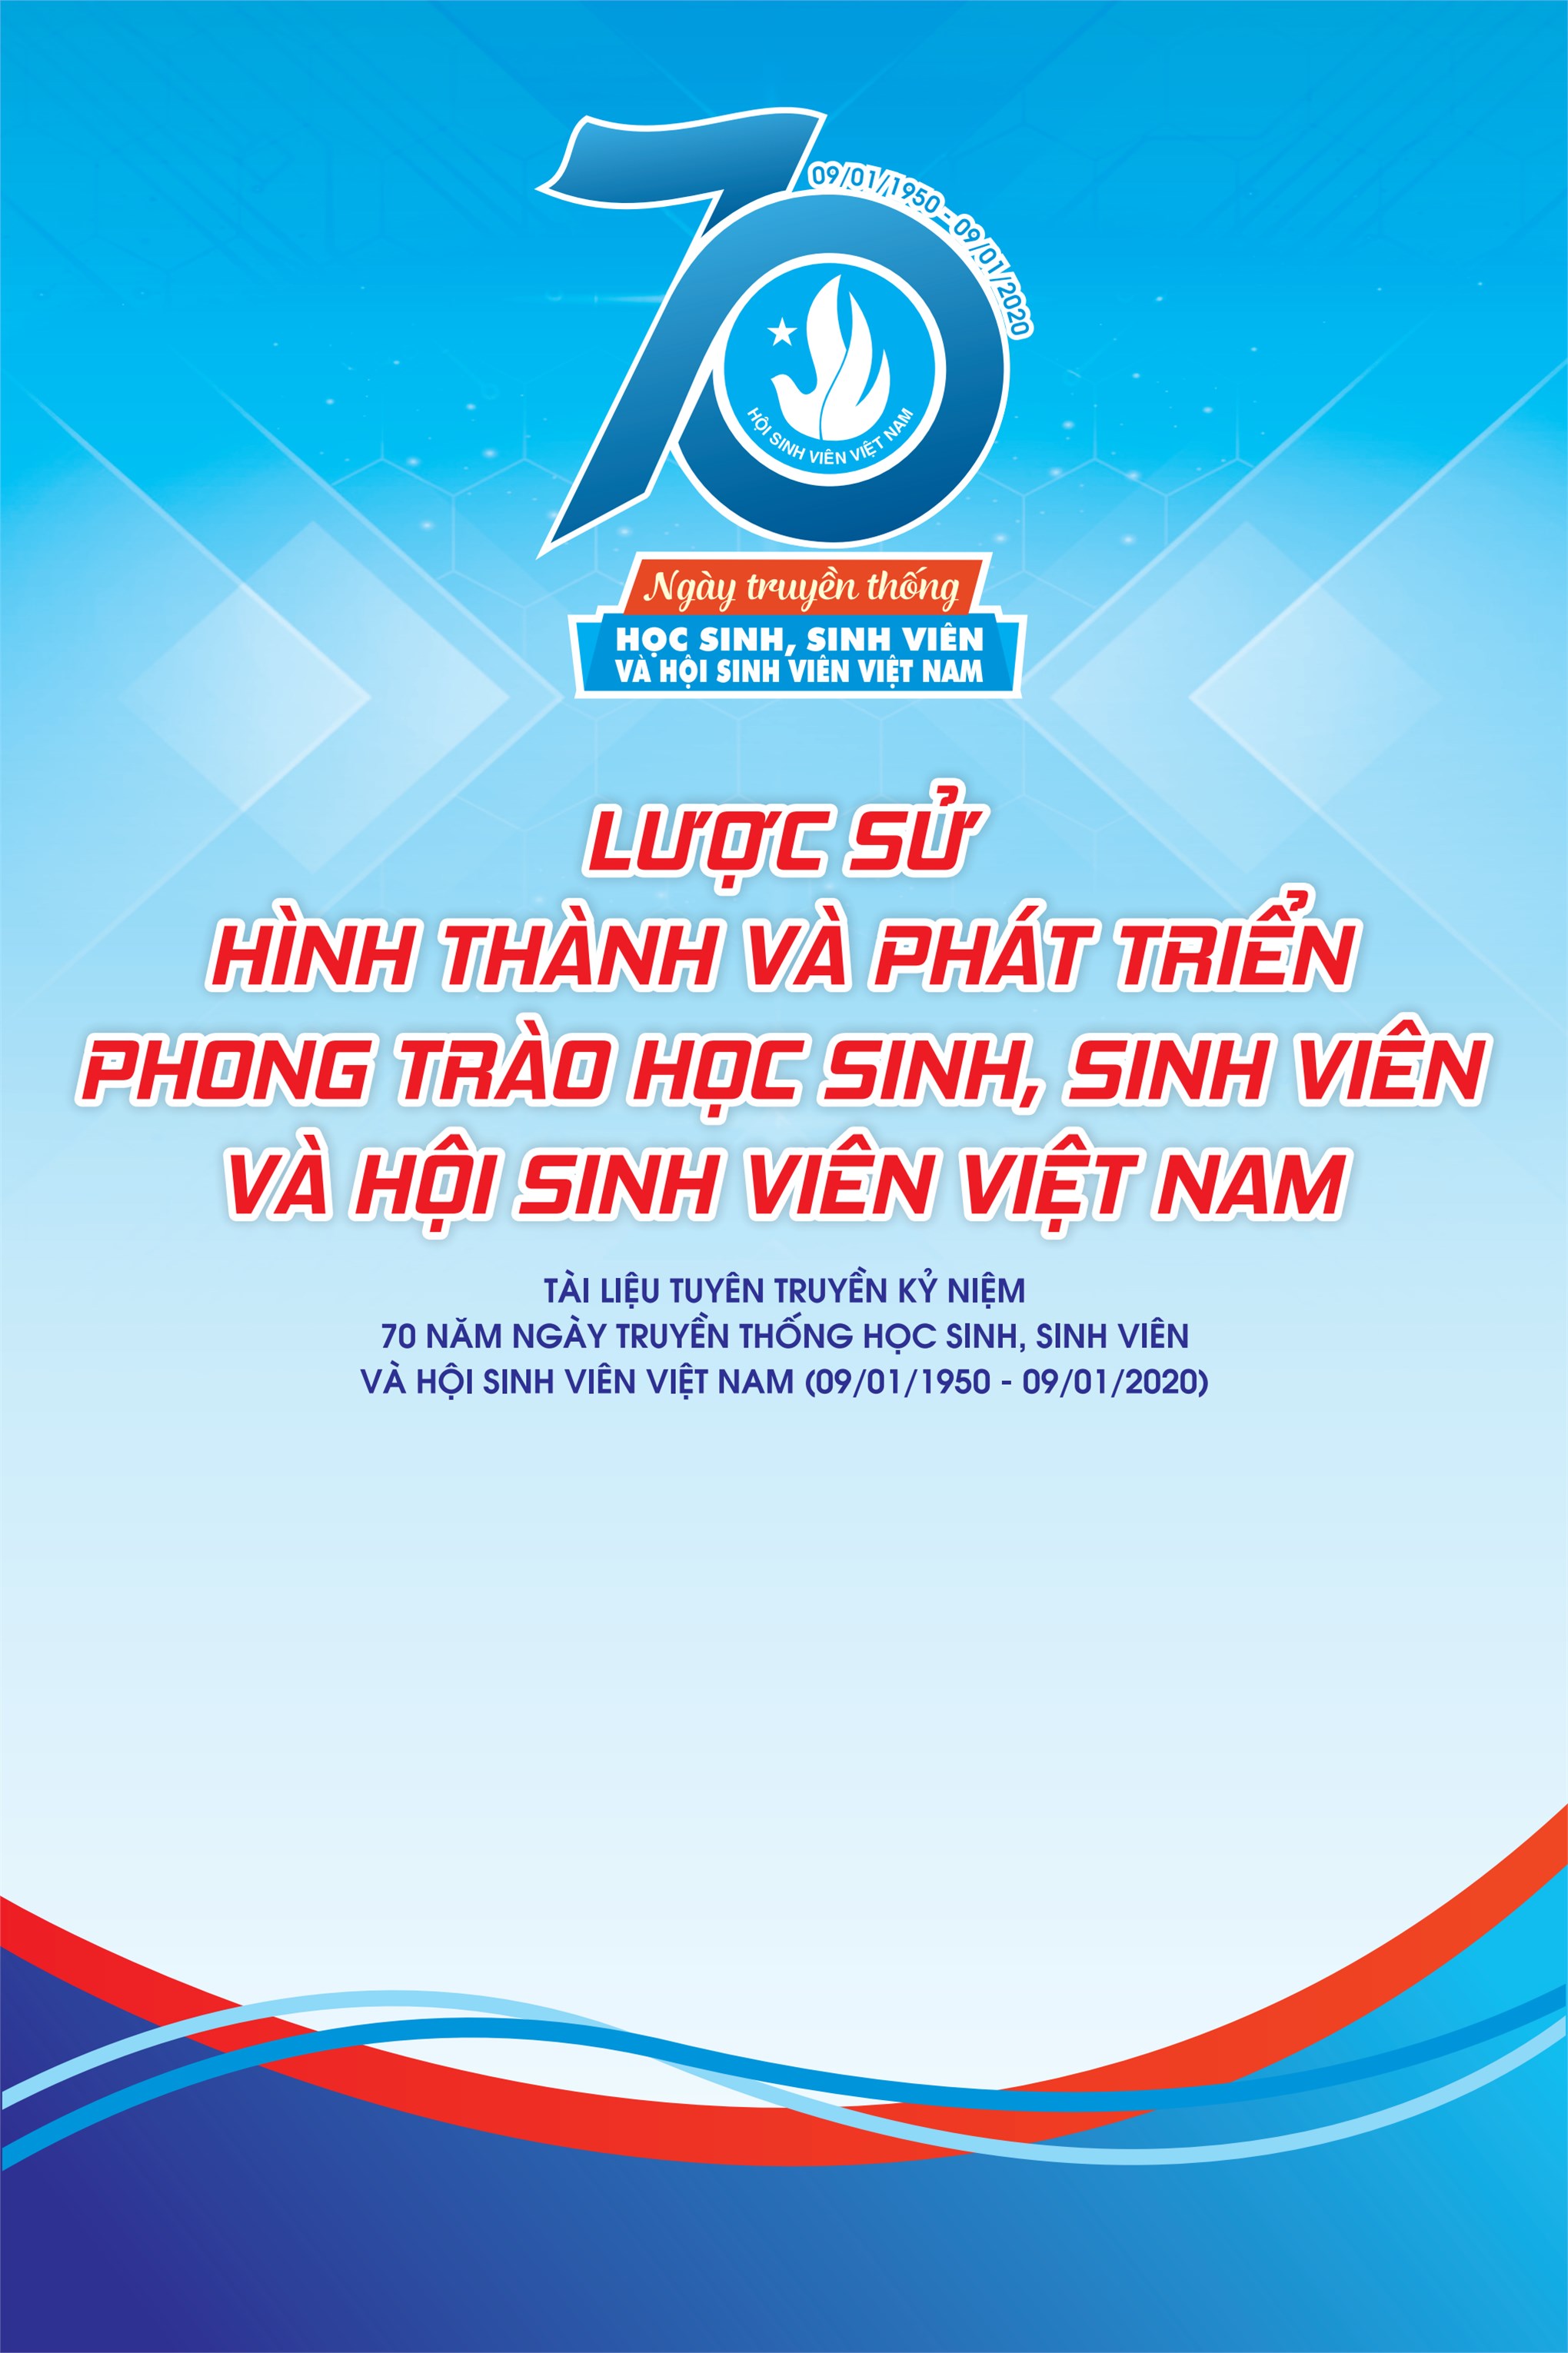 Hội Sinh viên Việt Nam - 70 năm xây dựng và trưởng thành